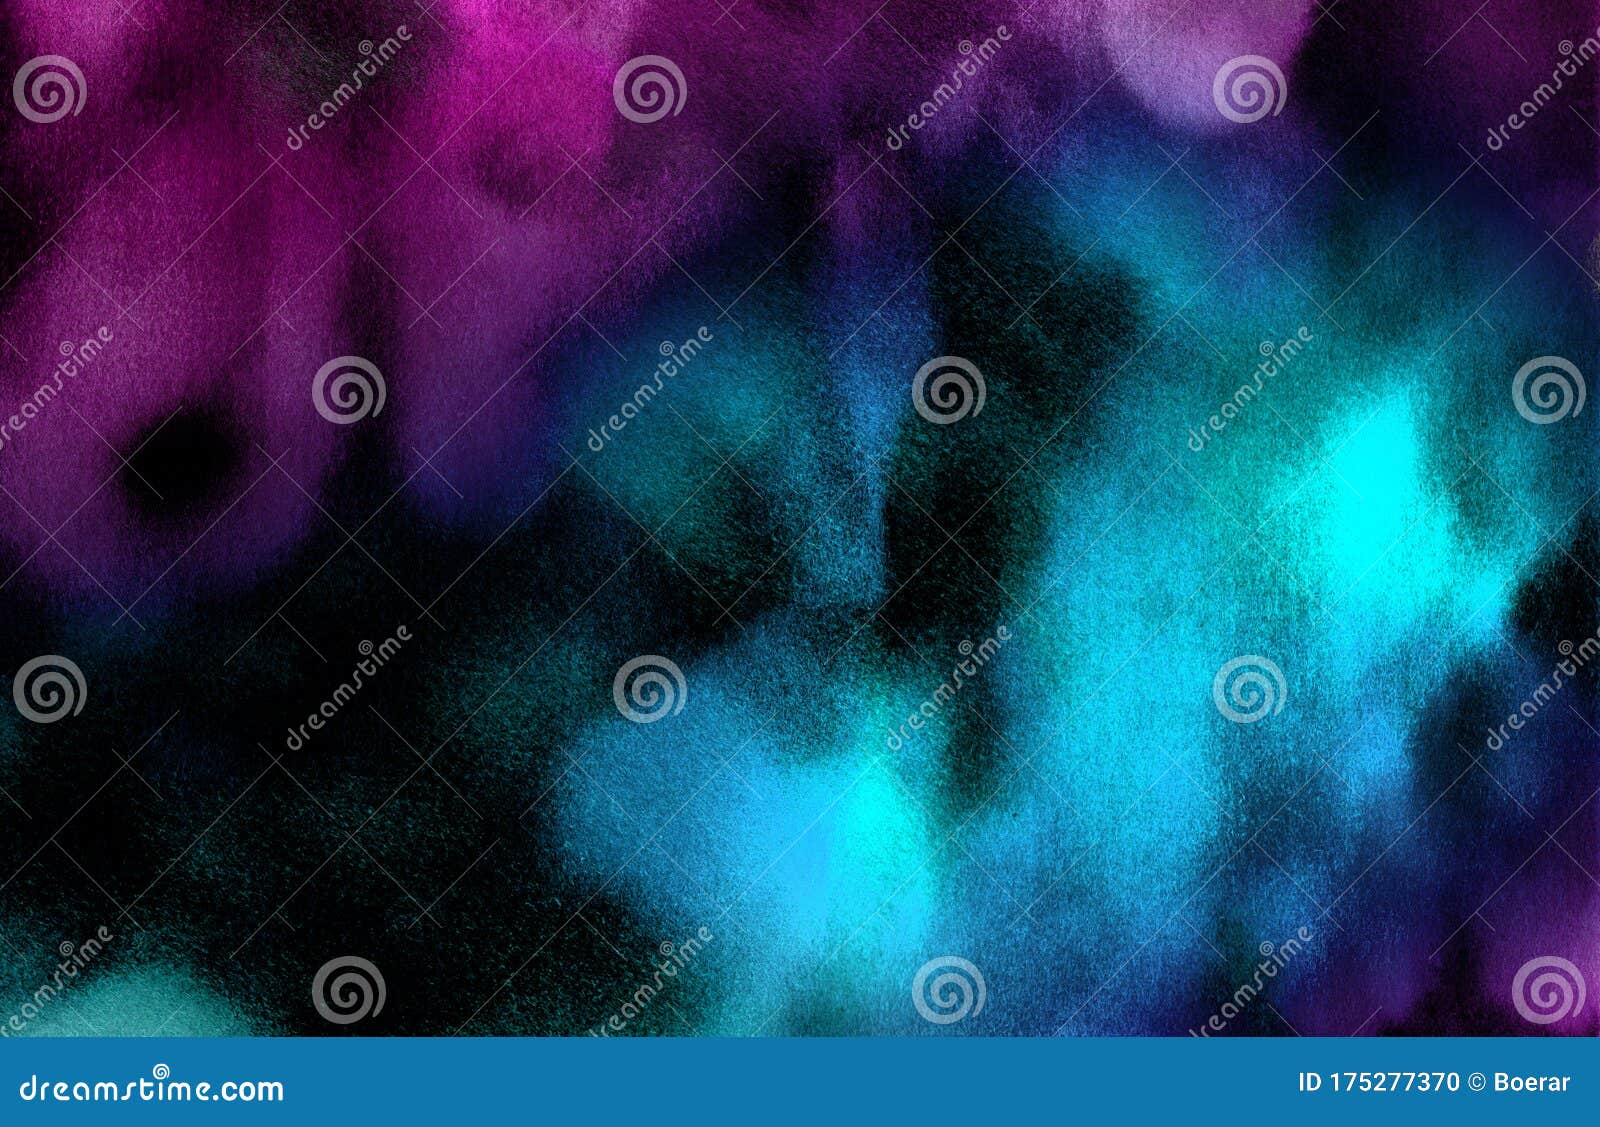 黑纸背景上的深霓虹水彩鲜艳的墨质感蓝 粉和紫色画布 适合现代设计库存例证 插画包括有宇宙 现代